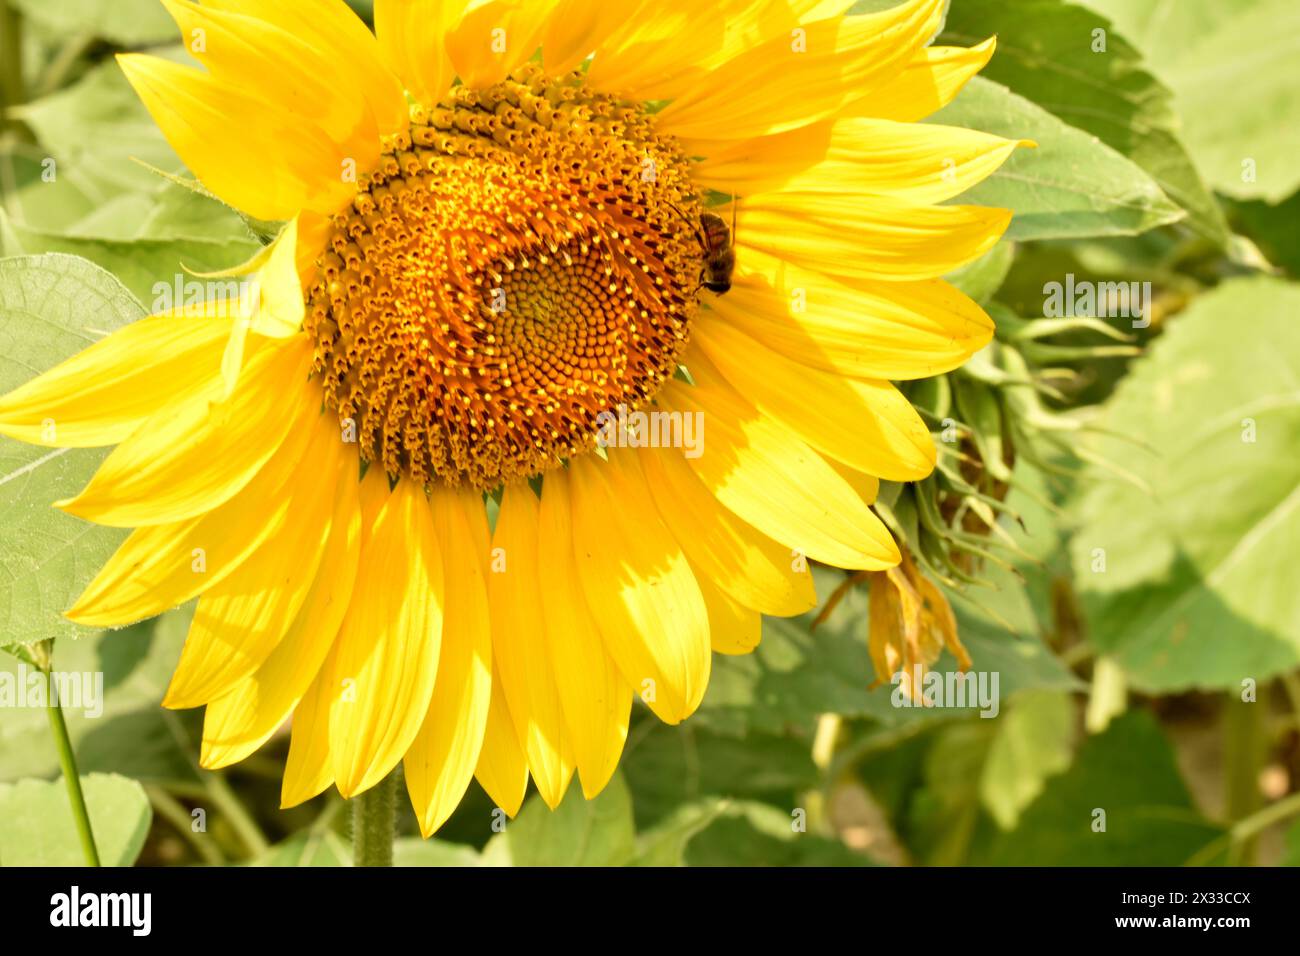 Das Bild zeigt einen Korb blühender Sonnenblumen aus der Nähe. Eine Biene kriecht über die Sonnenblumen. Stockfoto